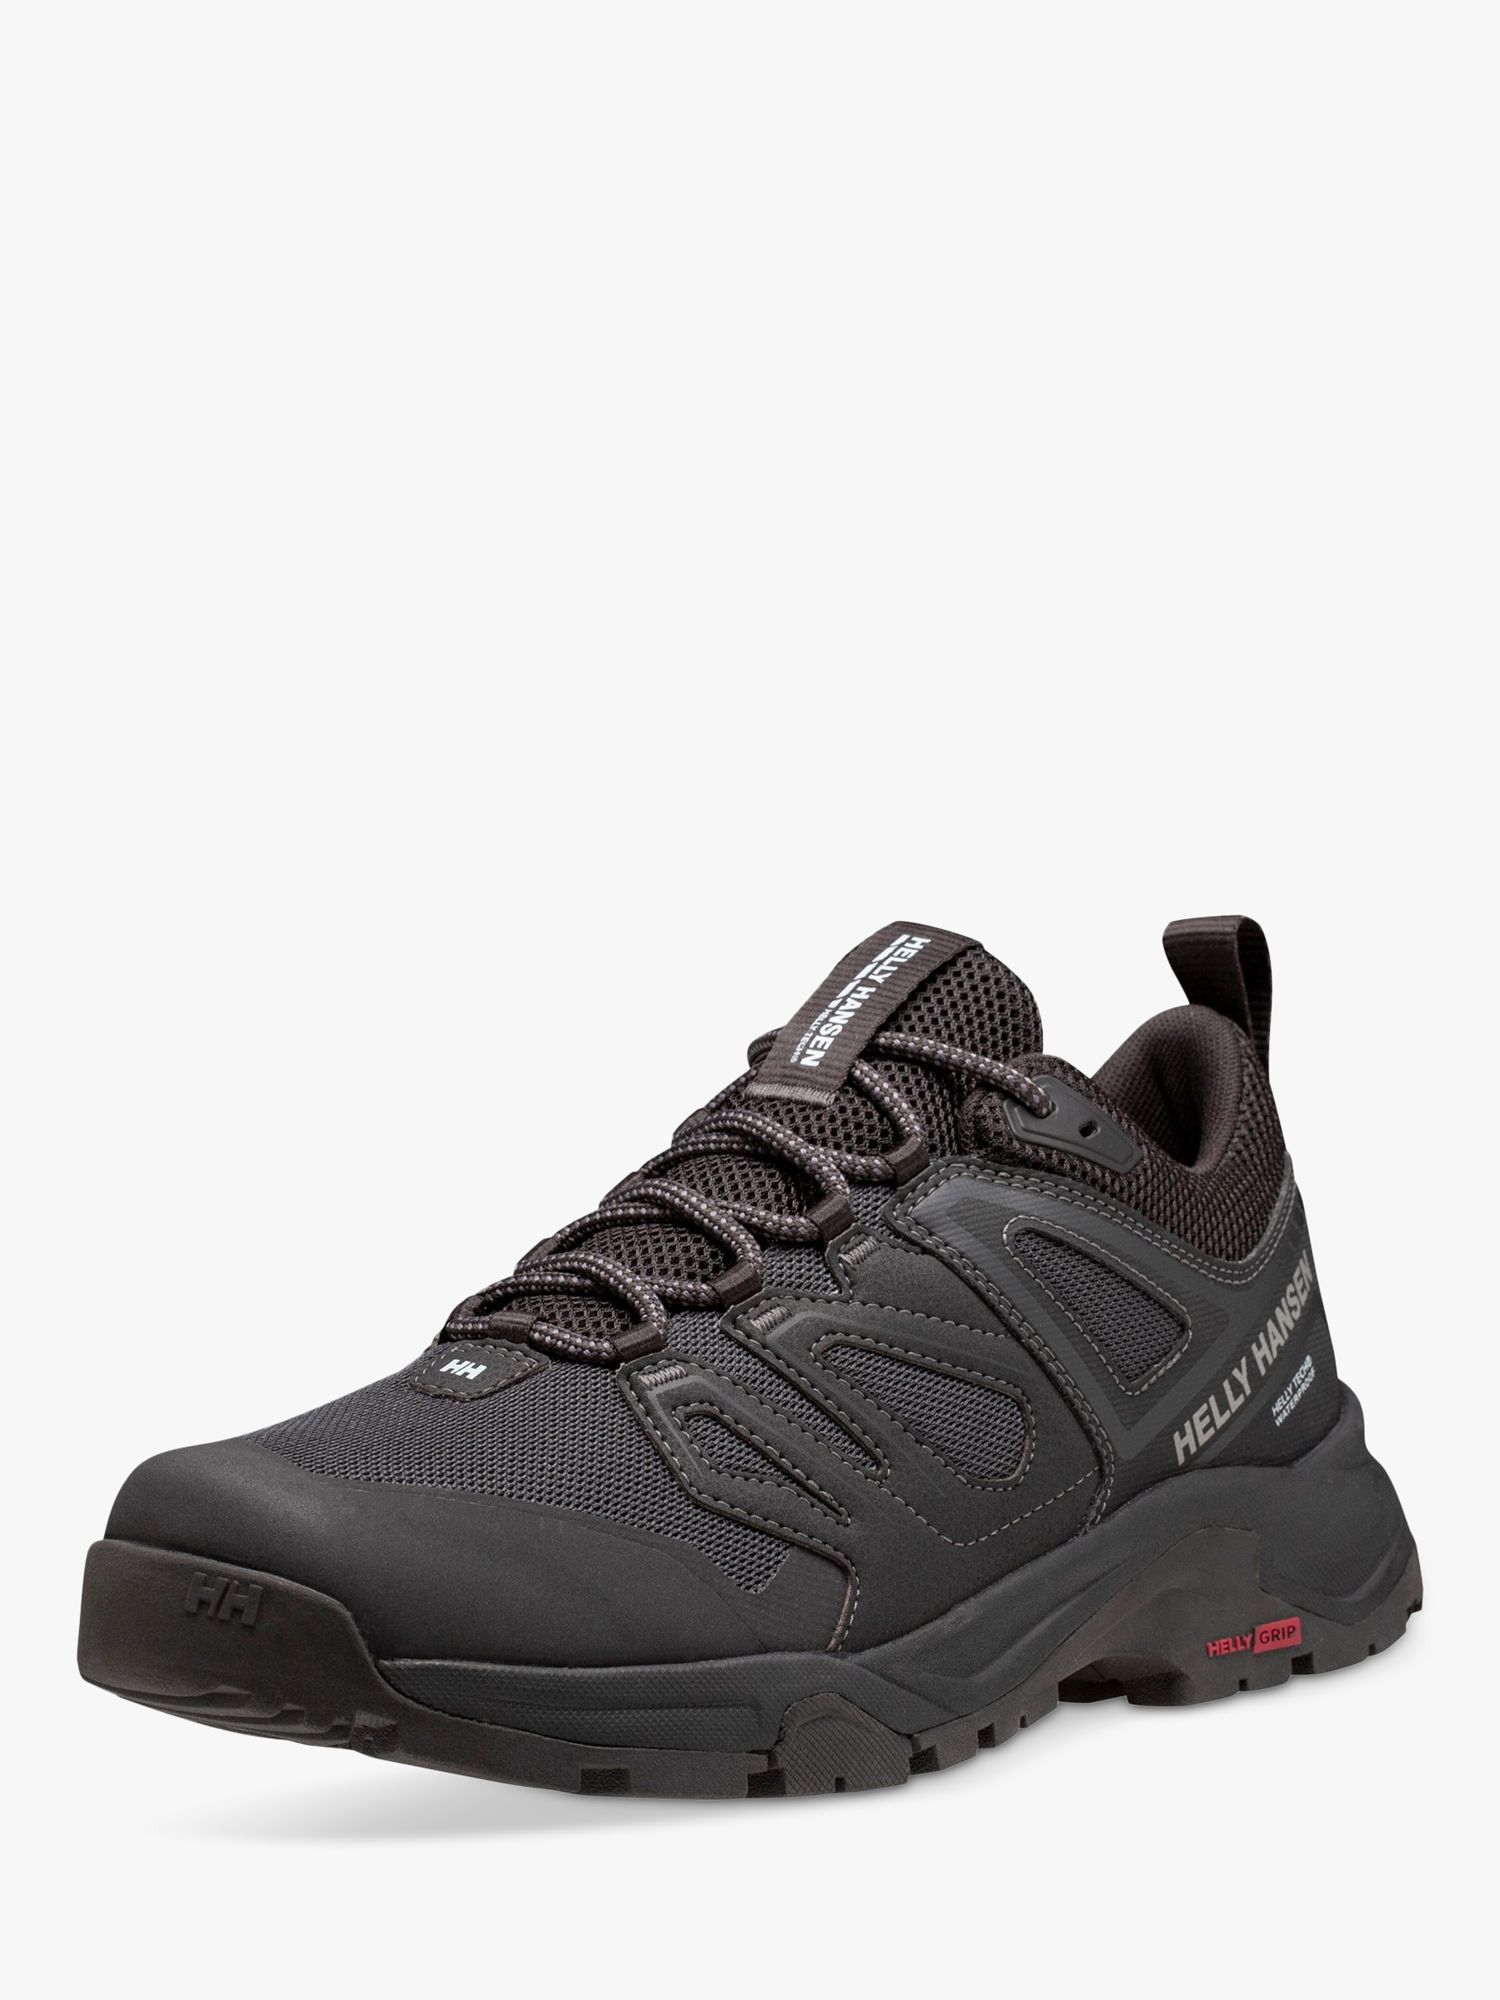 Helly Hansen Stalheim Hiking Shoes, Black, 7